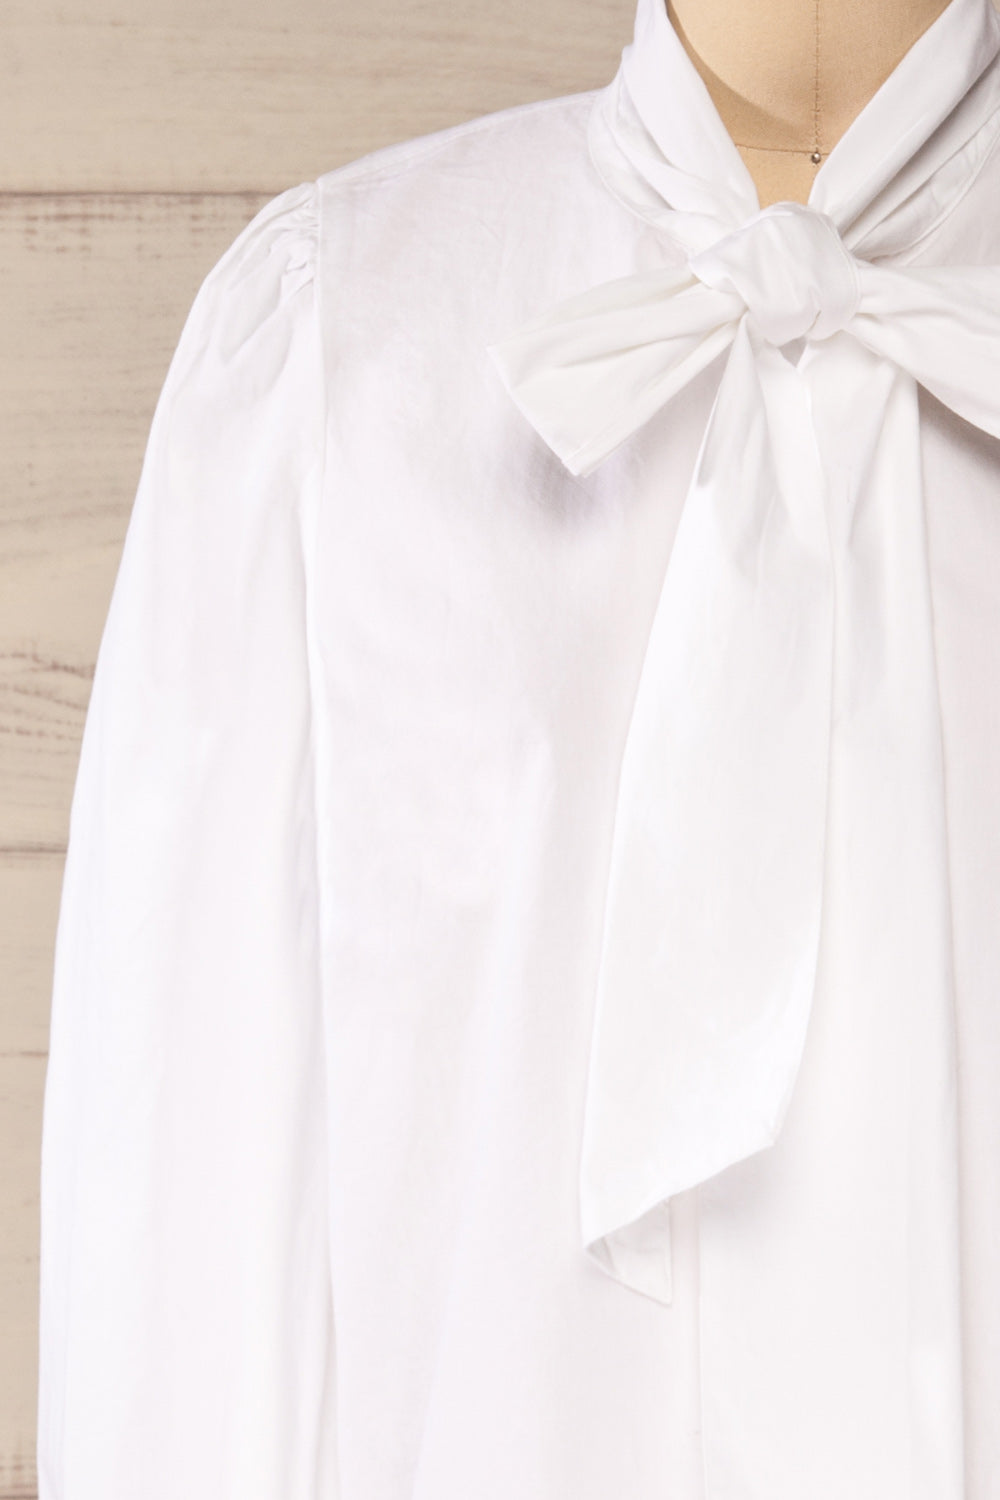 Spoletti White Long Sleeve Bow Blouse | La petite garçonne front close-up